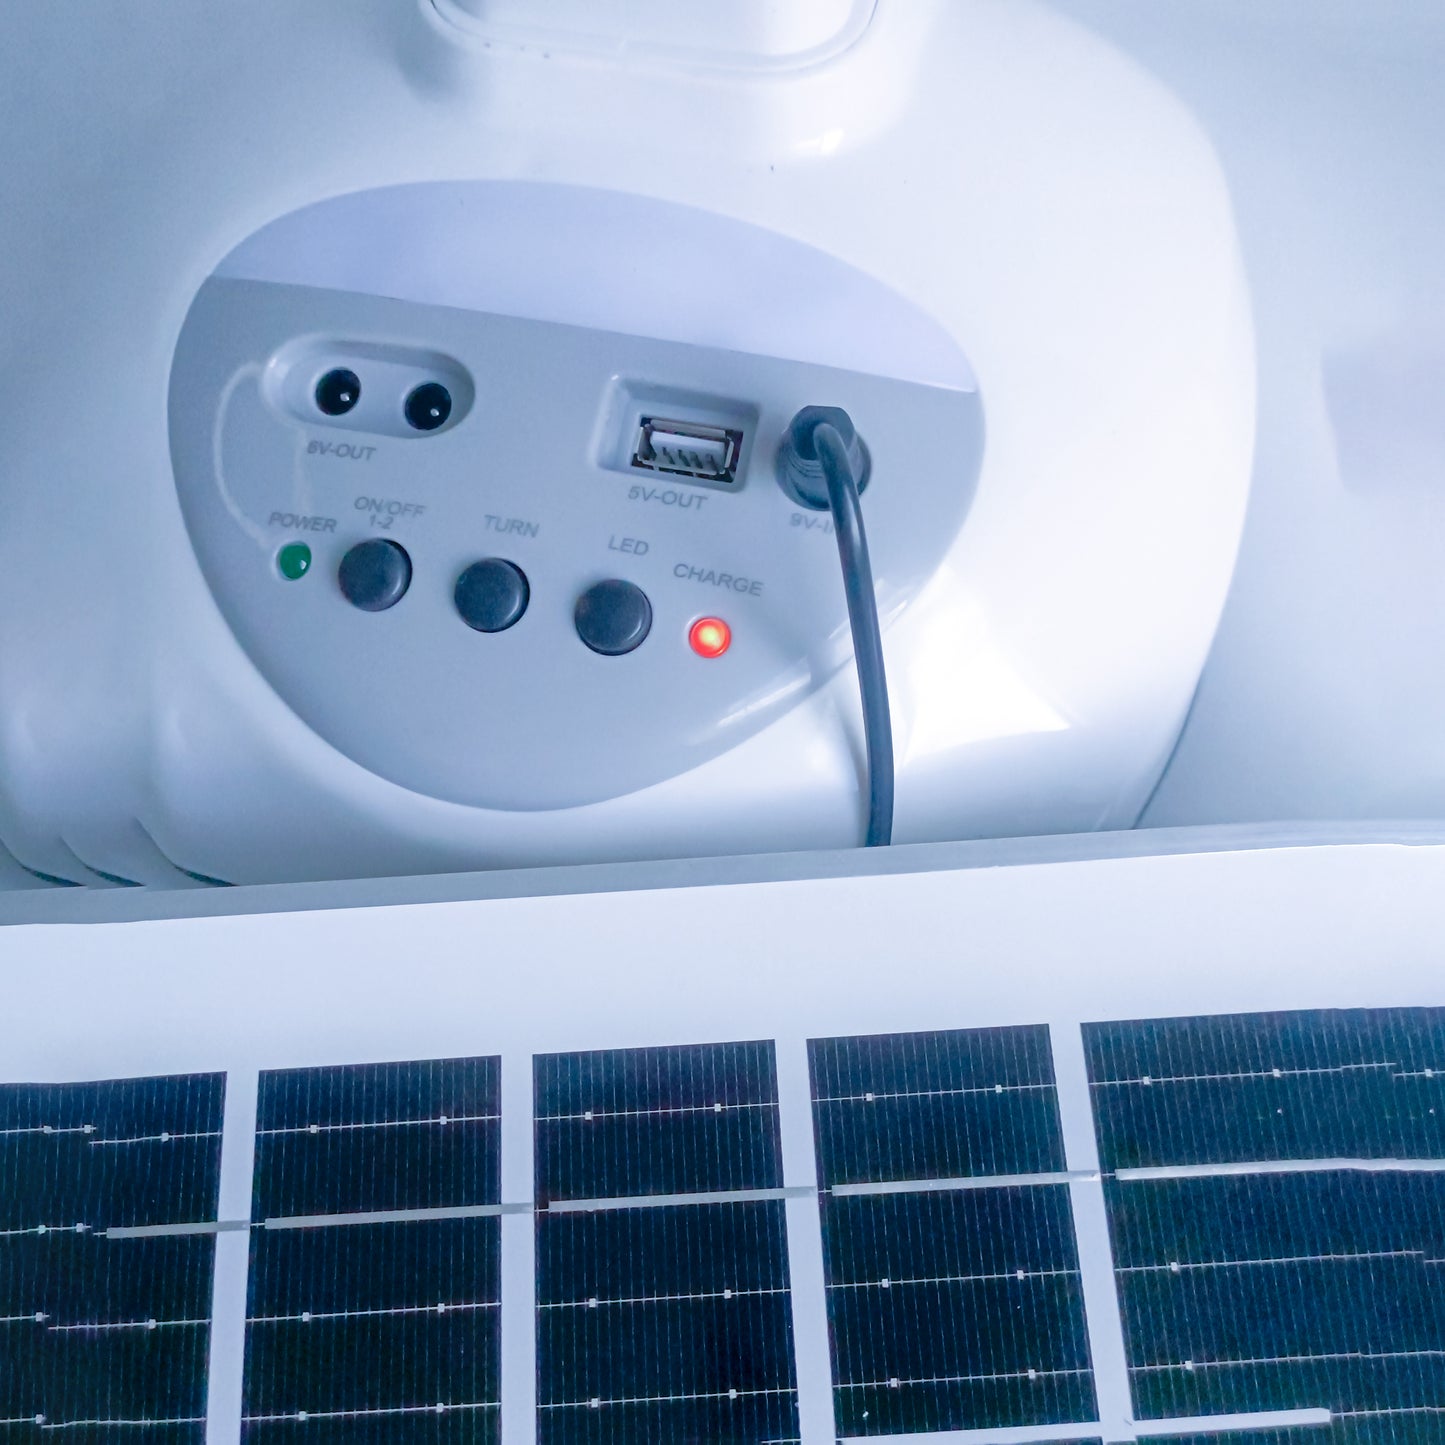 Ventilador GD TIMES 16 pulgadas con Panel Solar | Recarga Dispositivos | Bombillos de Emergencia